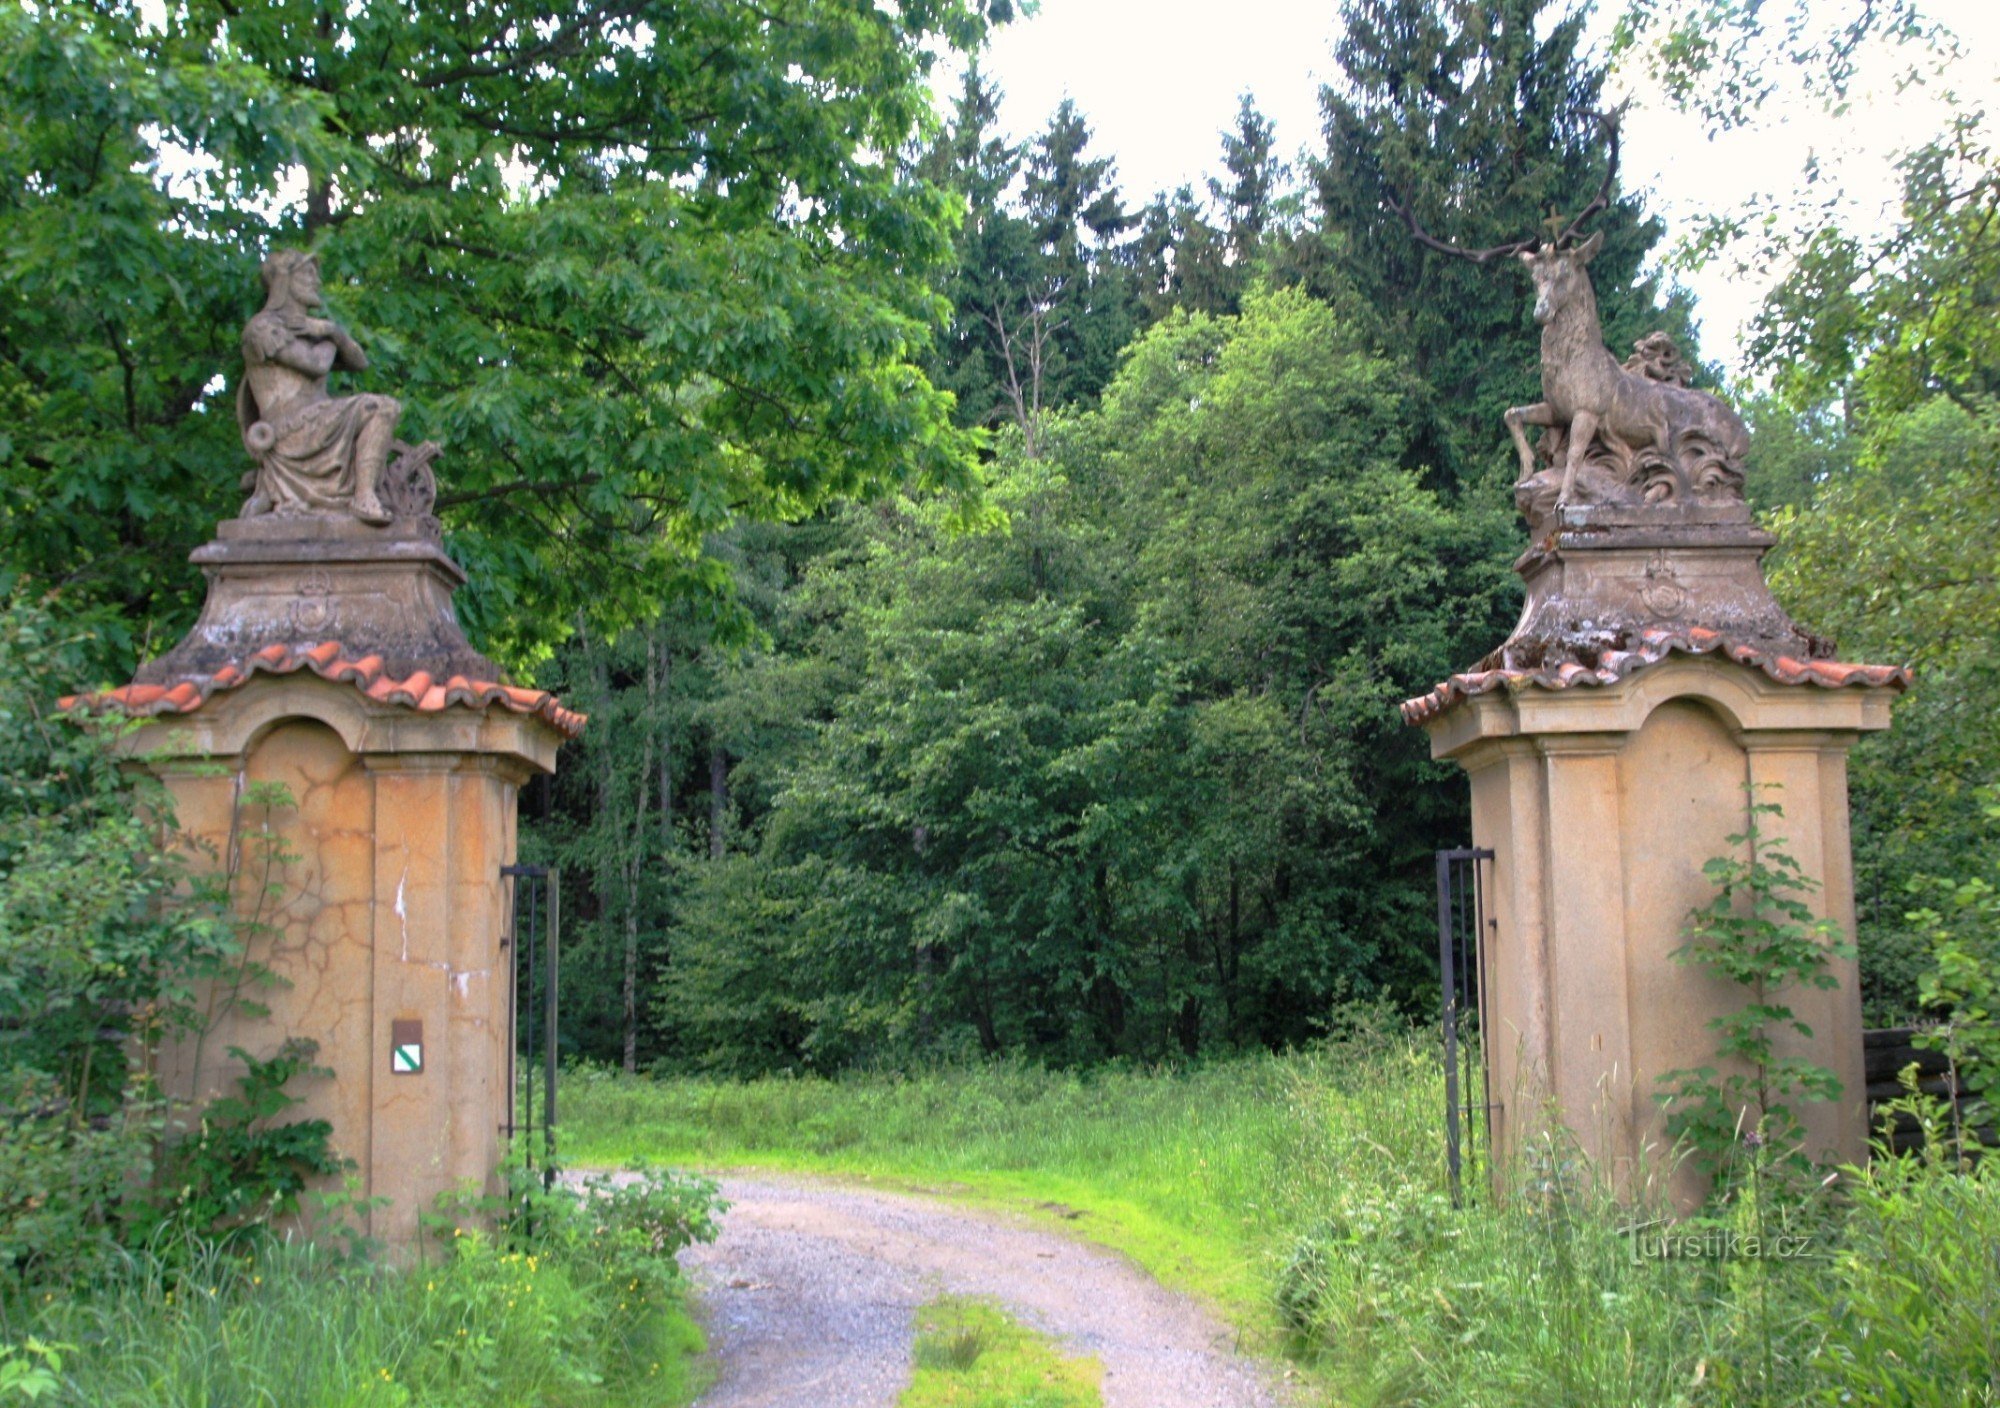 Karlov - the gate of the former deer park